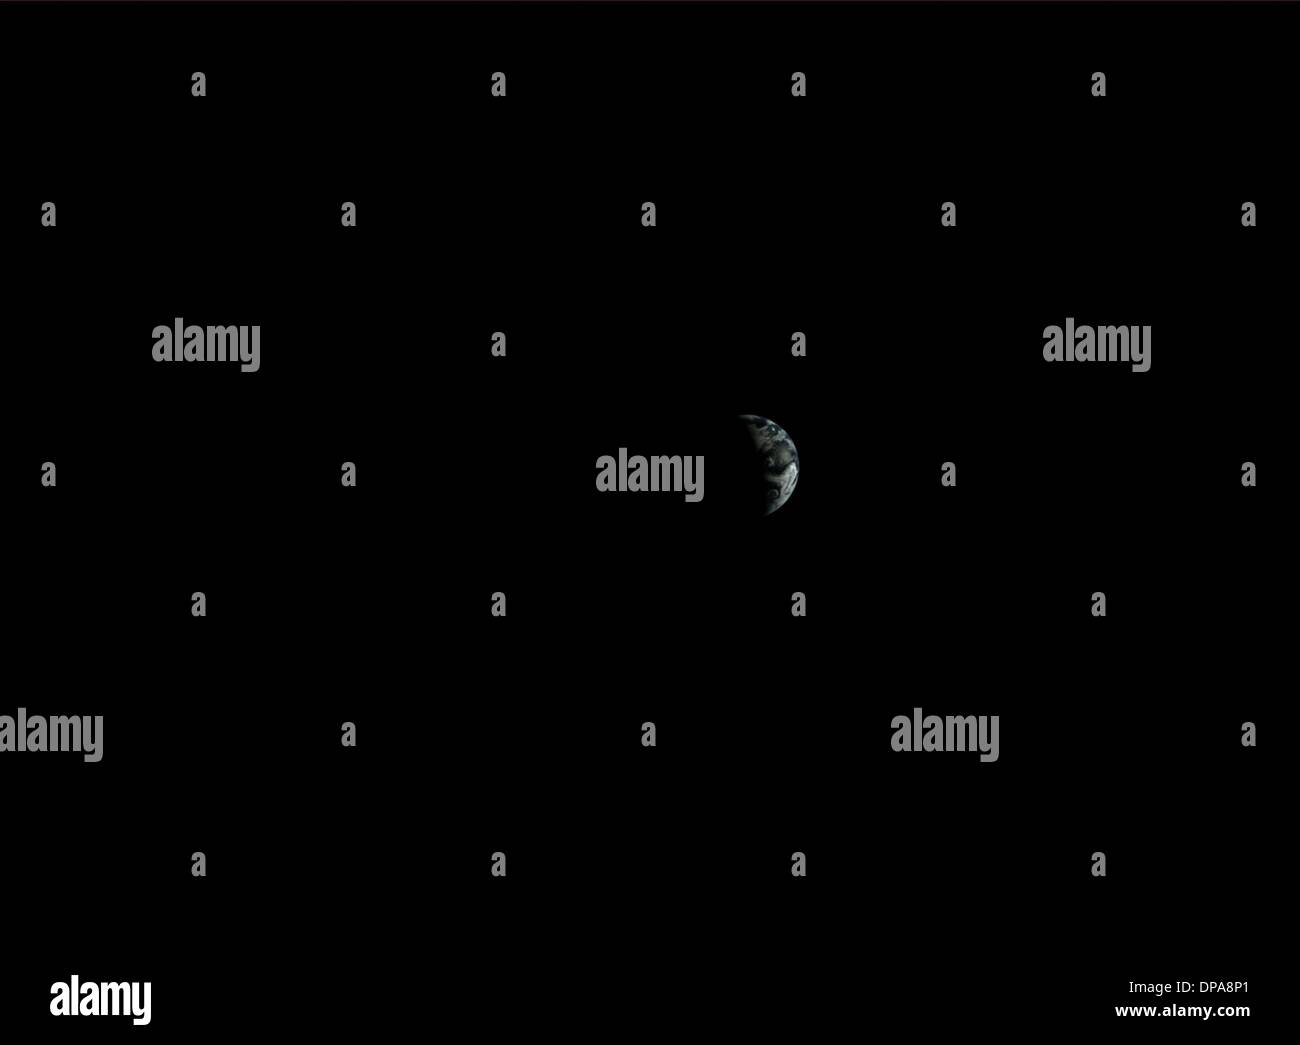 (140110)--Peking, 10. Januar 2014 (Xinhua)--Foto von der Landform Kamera die Chang'e-3 Mond Lander am 25. Dezember 2013 zeigt das Bild der Erde bei Chang'e-3 Raumsonde Mission erste Mondtag Kreis. Chinesische Akademie der Wissenschaften veröffentlicht eine Gruppe von Fotos von der Mondlandschaft von den Kameras auf Chinas Raumsonde Chang'e-3 Freitag. Chang ' e-3, mit an Bord, erste Mondrover das Land auf dem Mond landeten am 14. Dezember 2013, das erste Mal, das China ein Raumschiff zu weich landen auf der Oberfläche eines außerirdischen geschickt hat. (Xinhua) (Cjq) Stockfoto